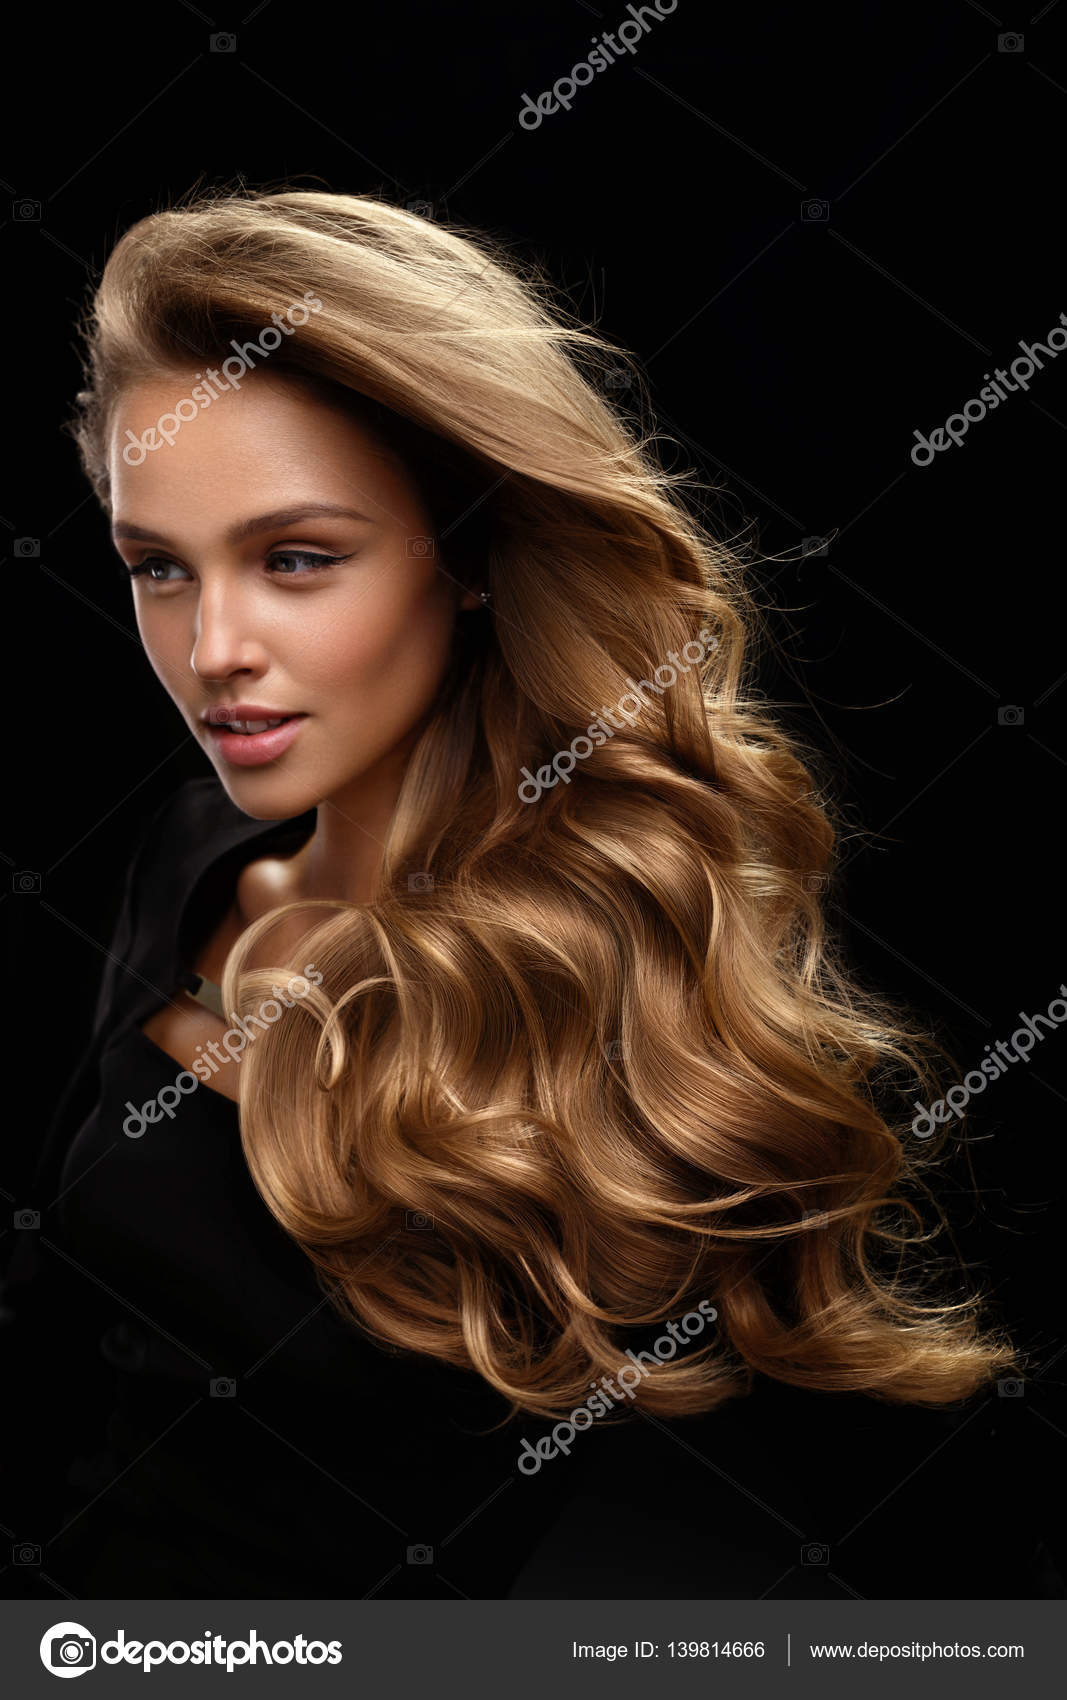 Cabelo loiro comprido lindo penteado mulher moda maquiagem pele